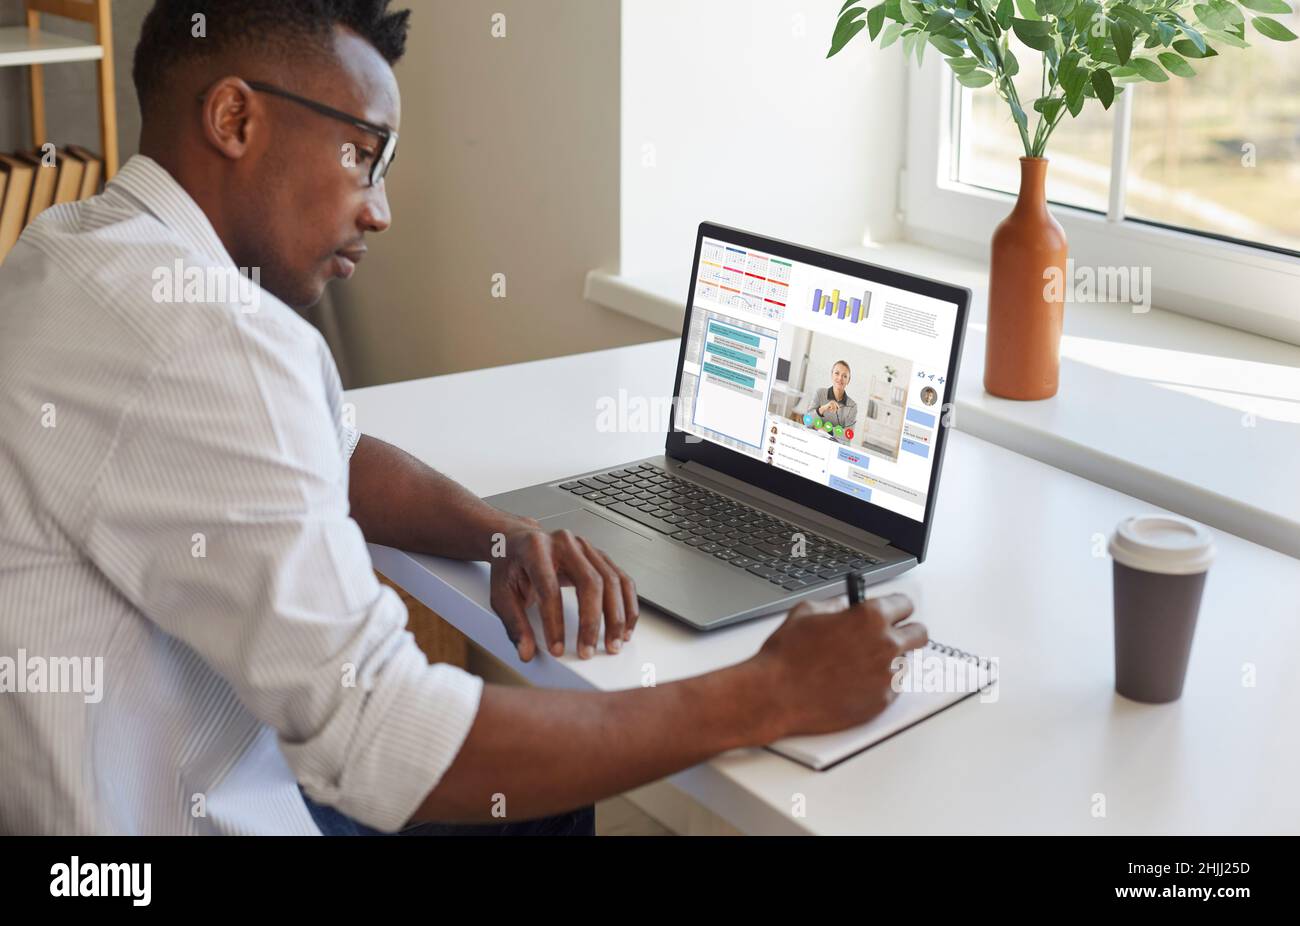 Homme noir travaillant sur ordinateur portable, communiquant par chat et appel vidéo, et prenant des notes Banque D'Images